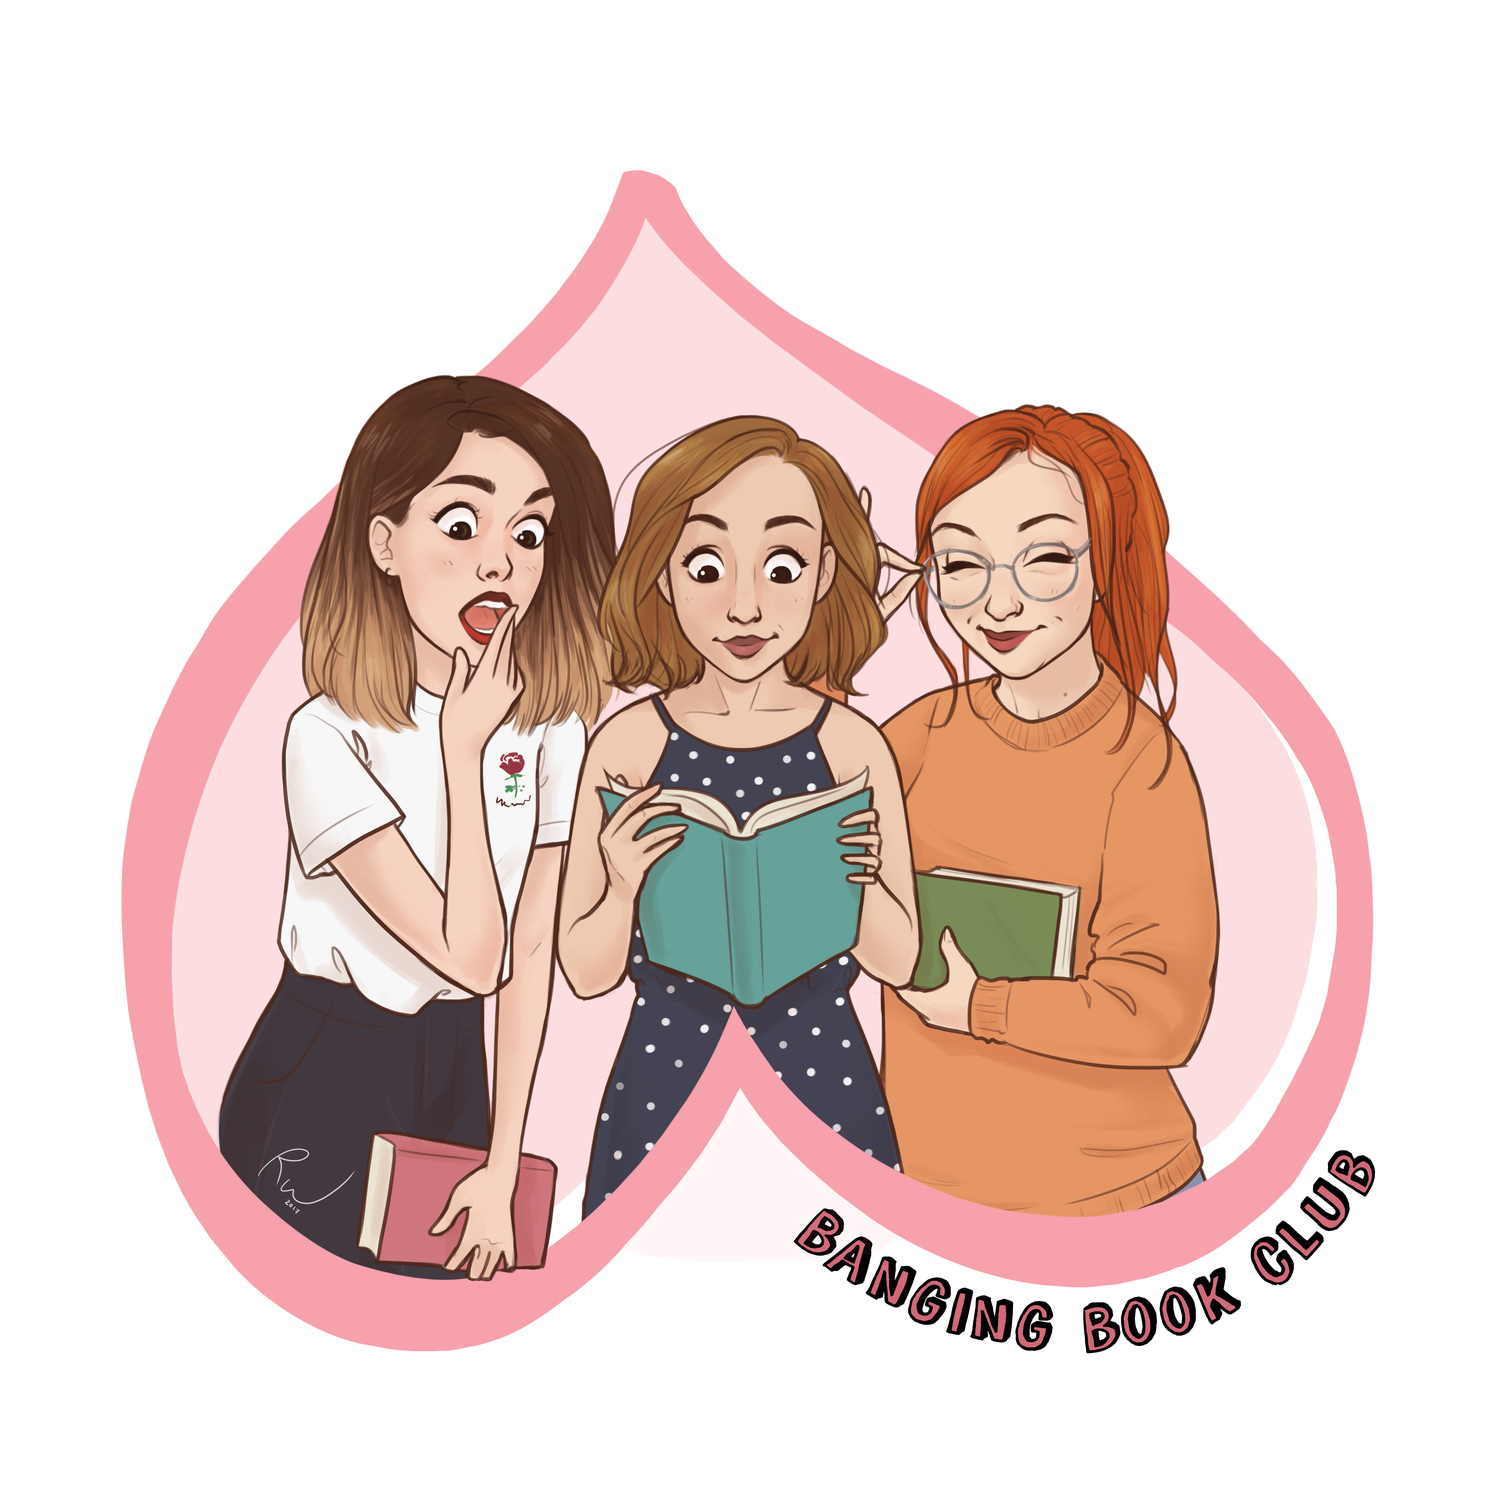 Banging Book Club